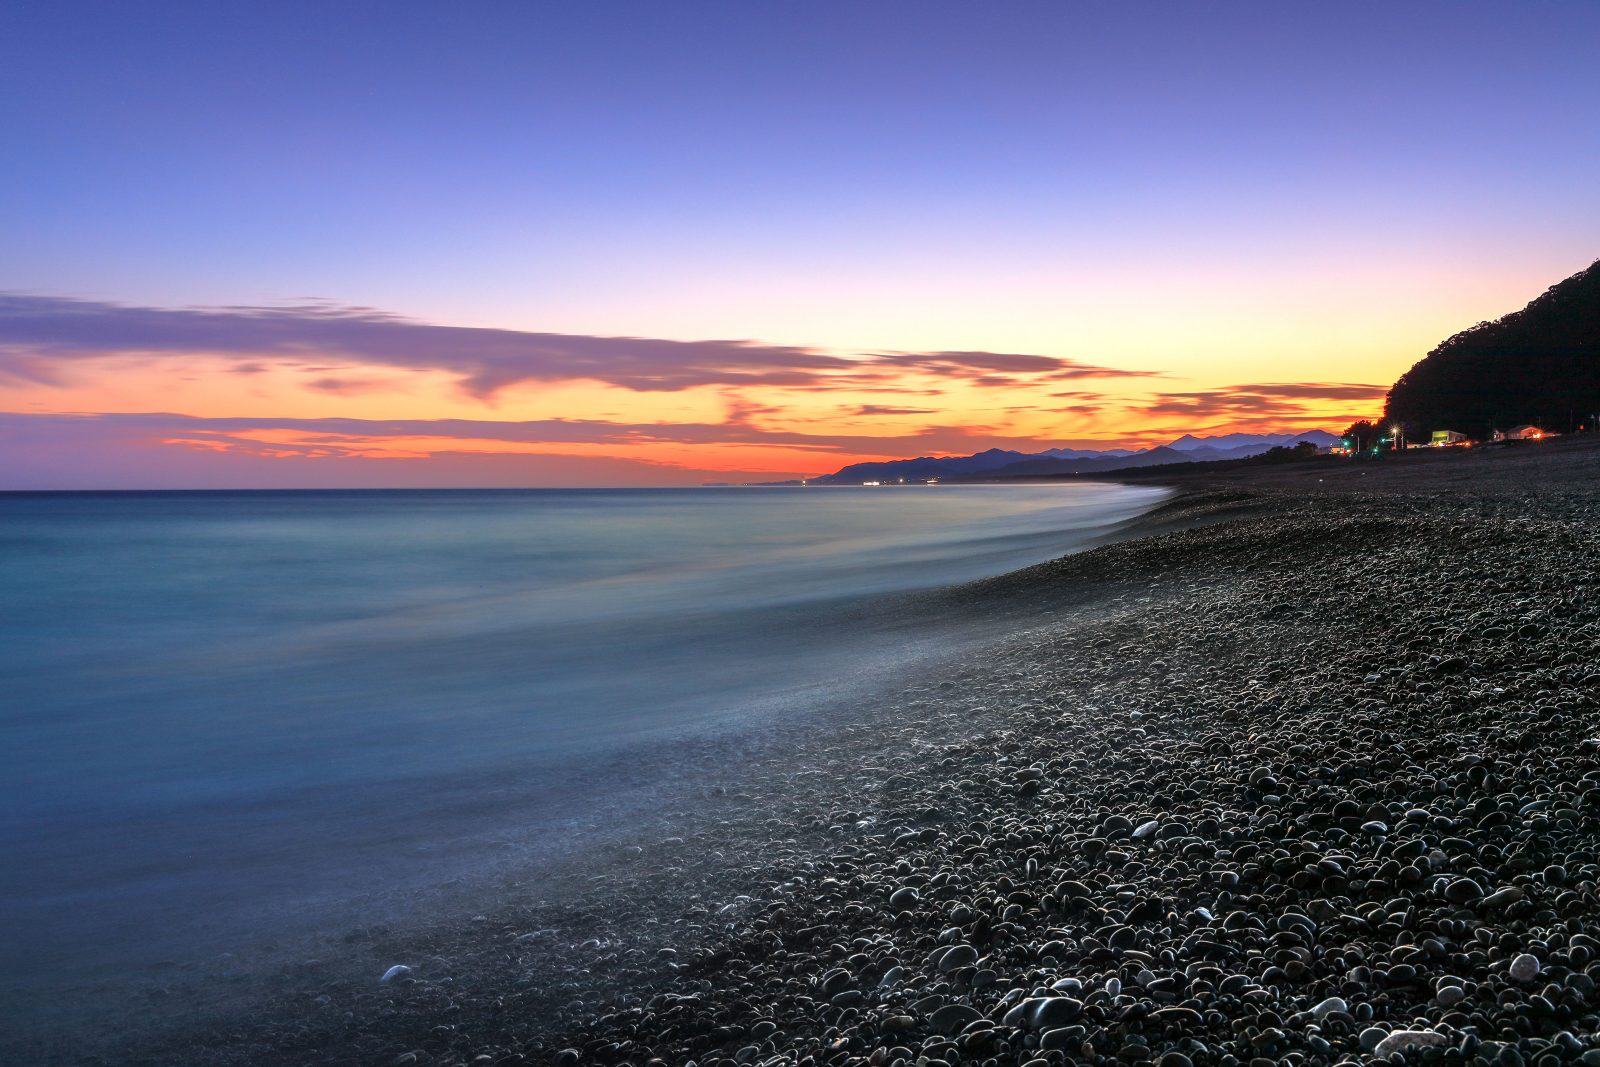 七里御浜の写真「夕焼けの七里御浜海岸」